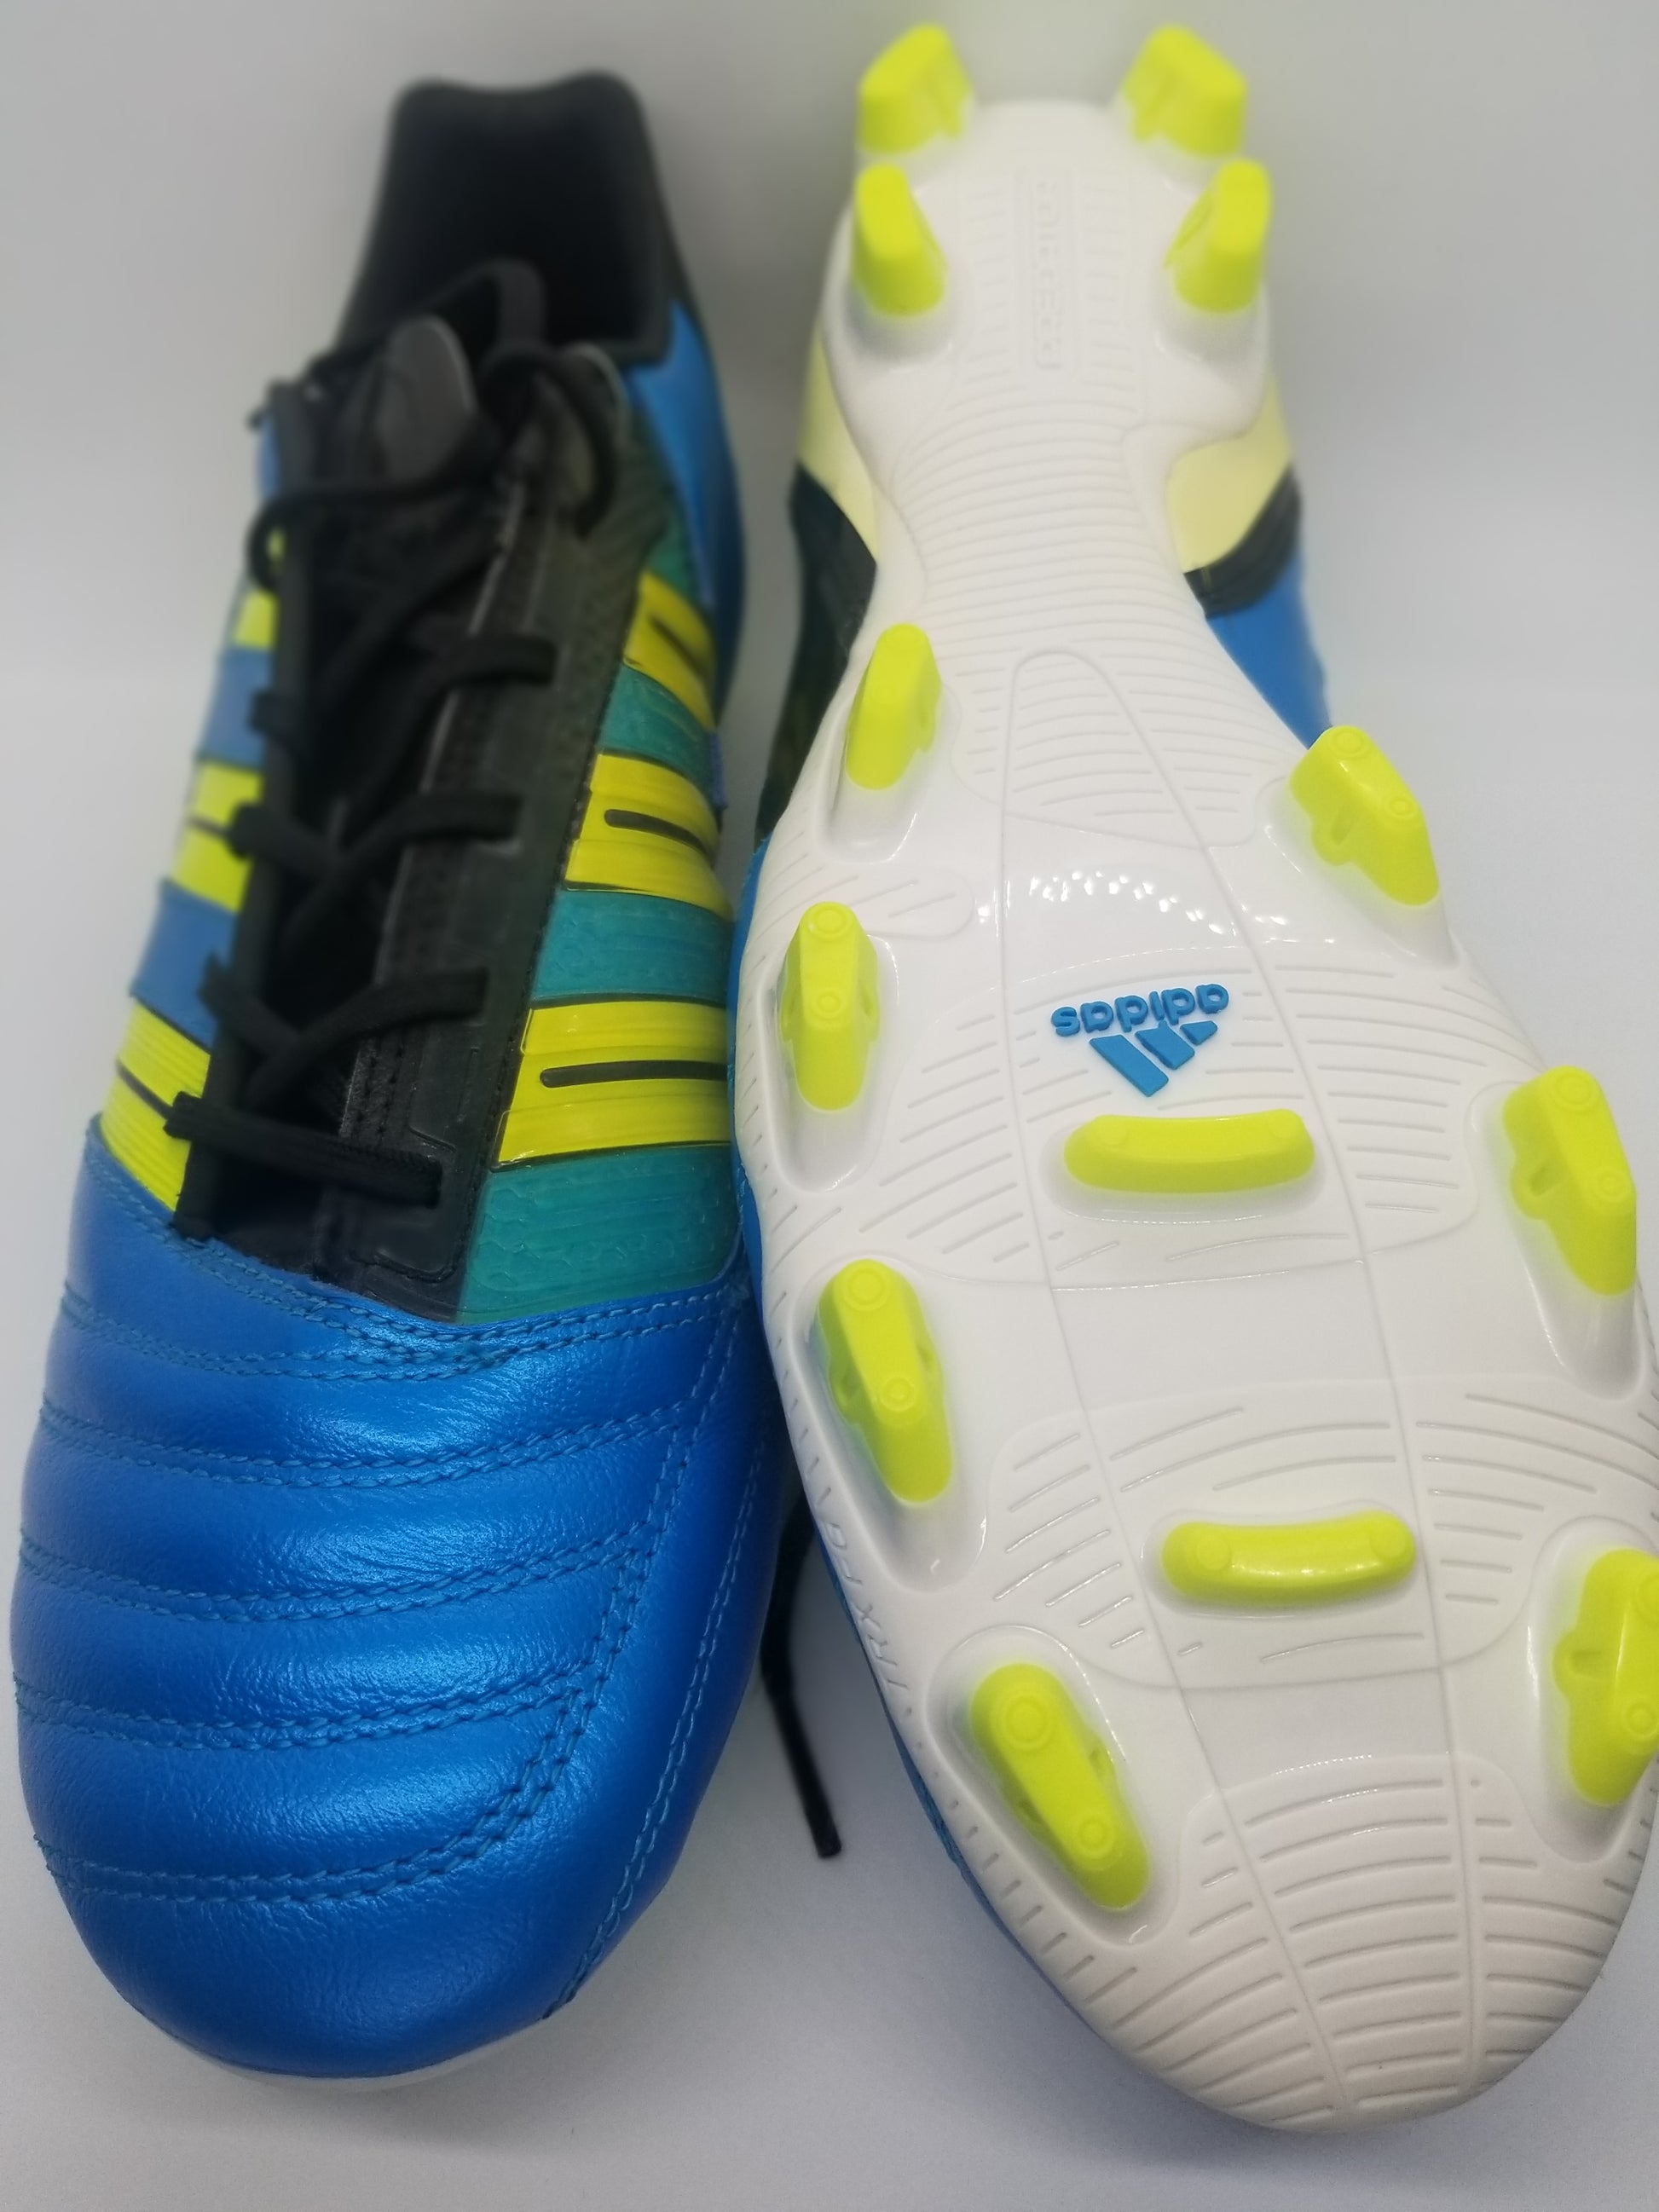 Adidas Predator TRX FG – Nyong Boots